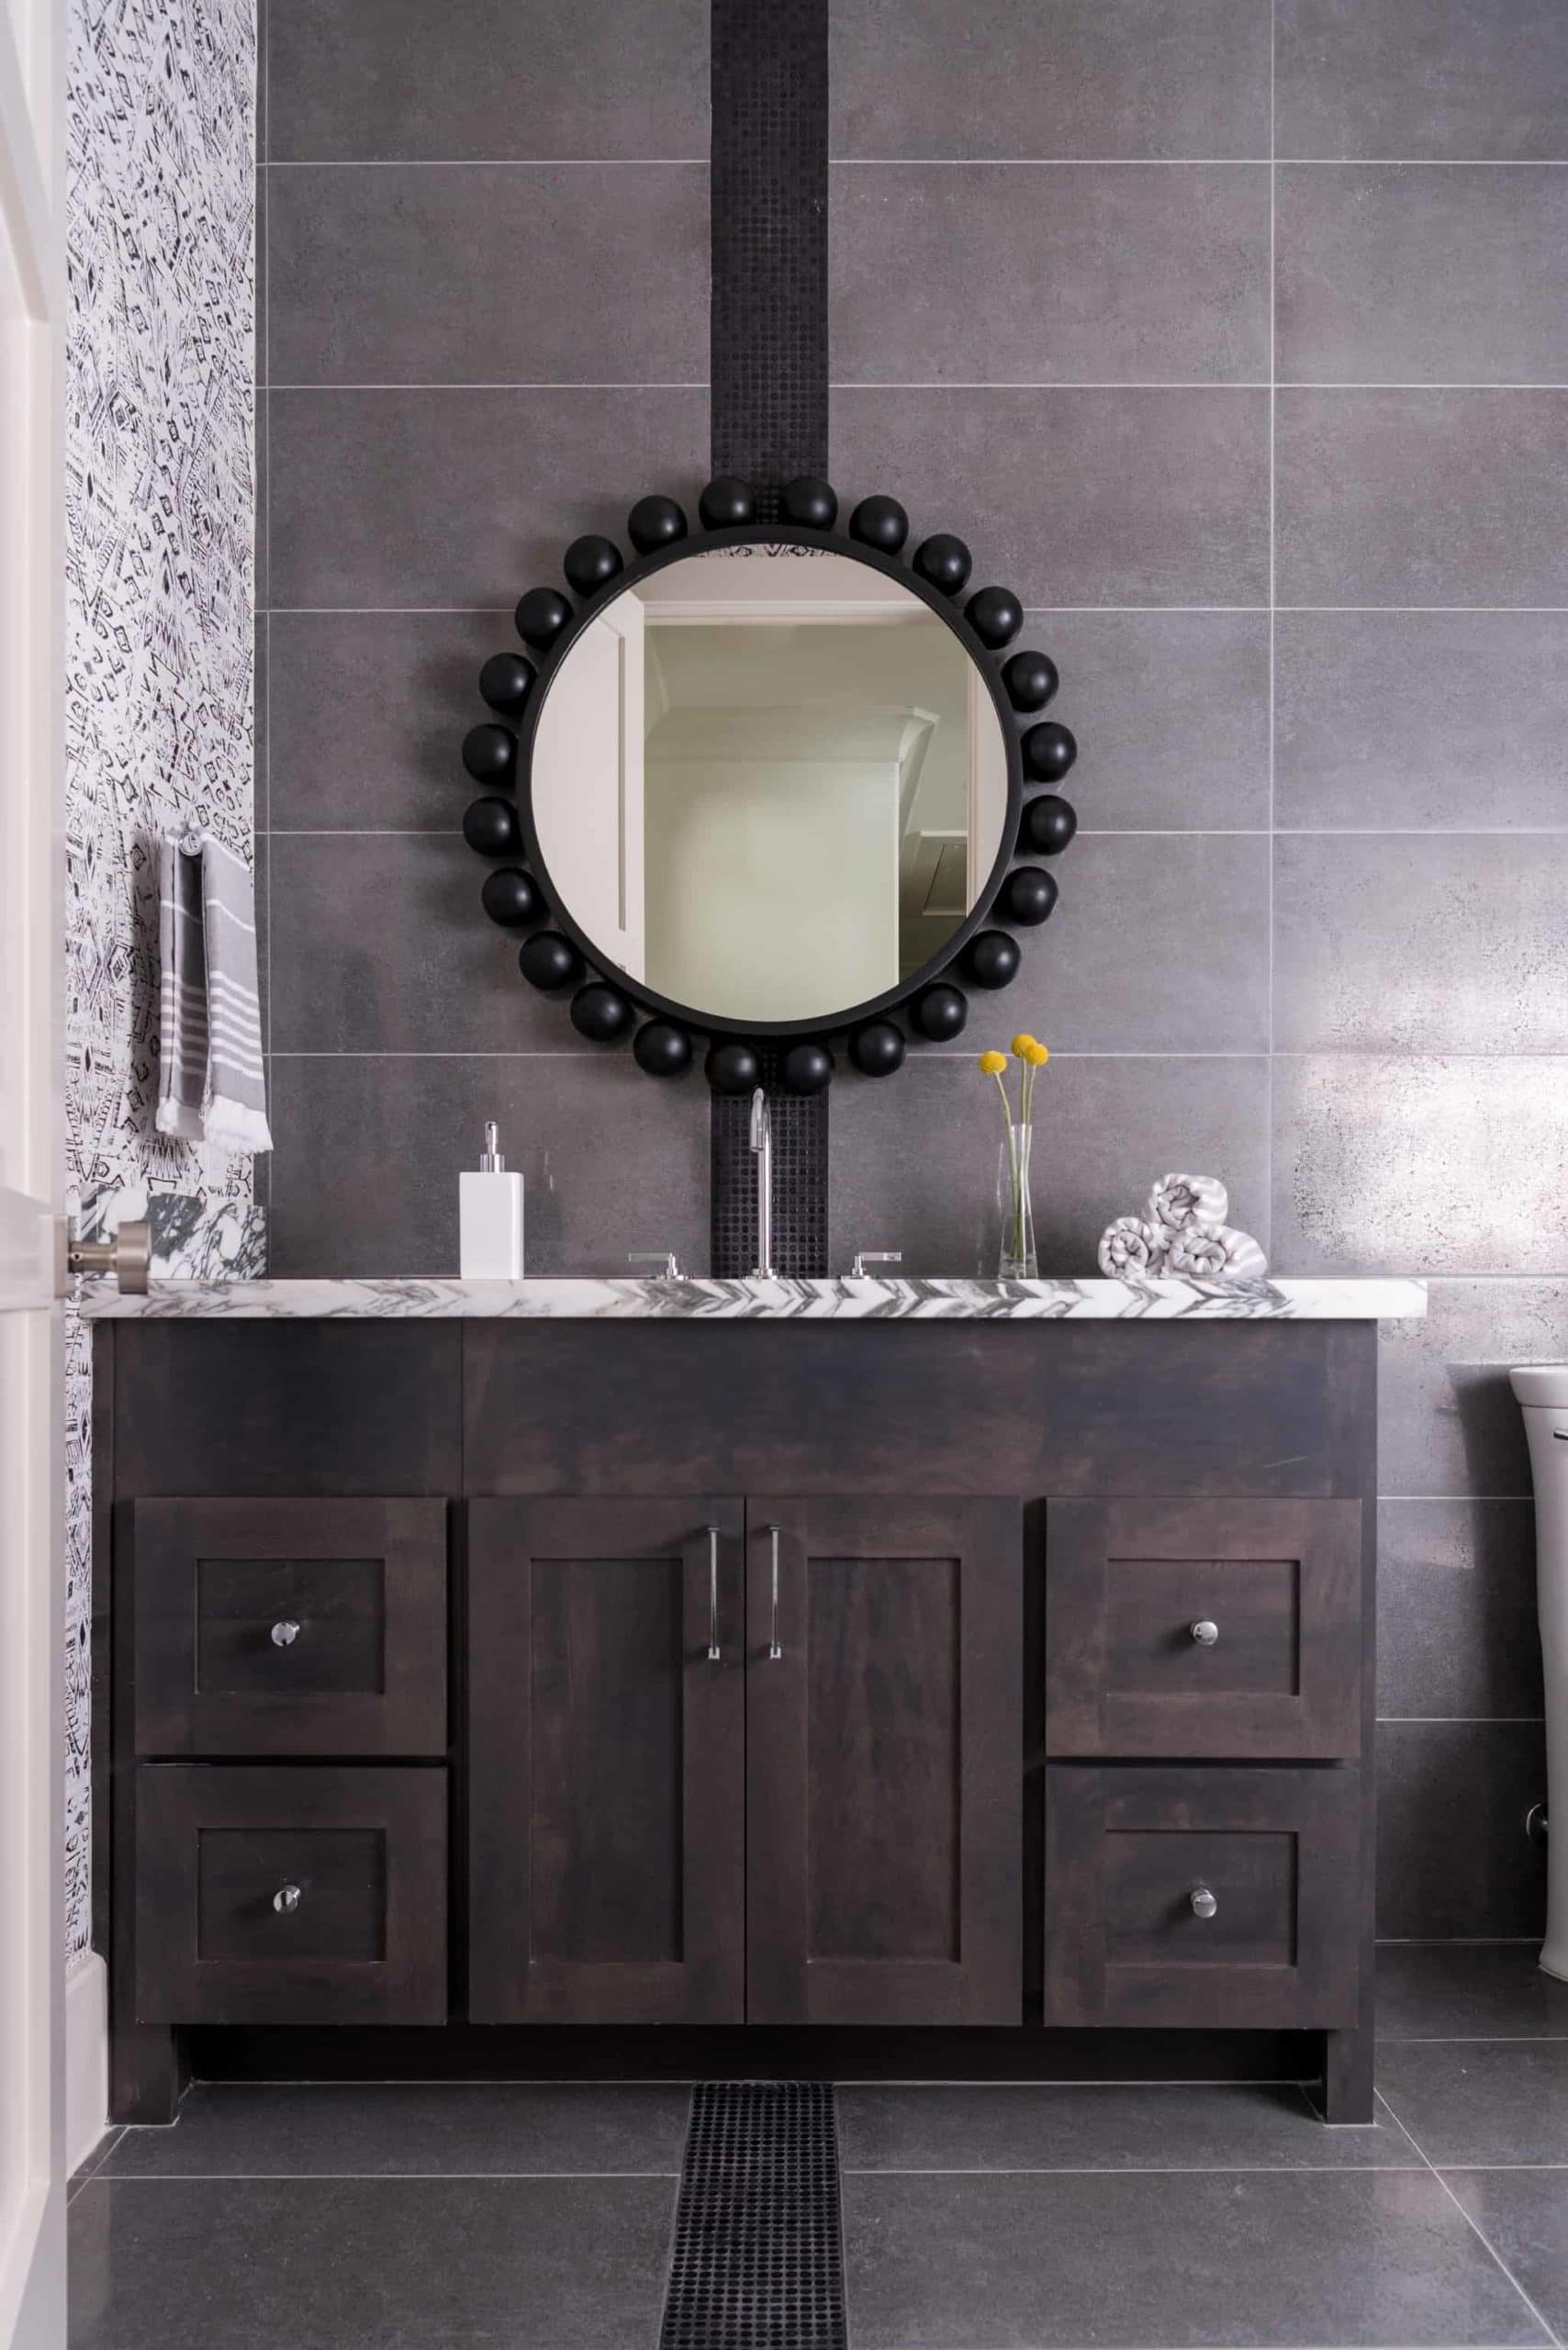 A circular mirror in a moody, handsome bathroom